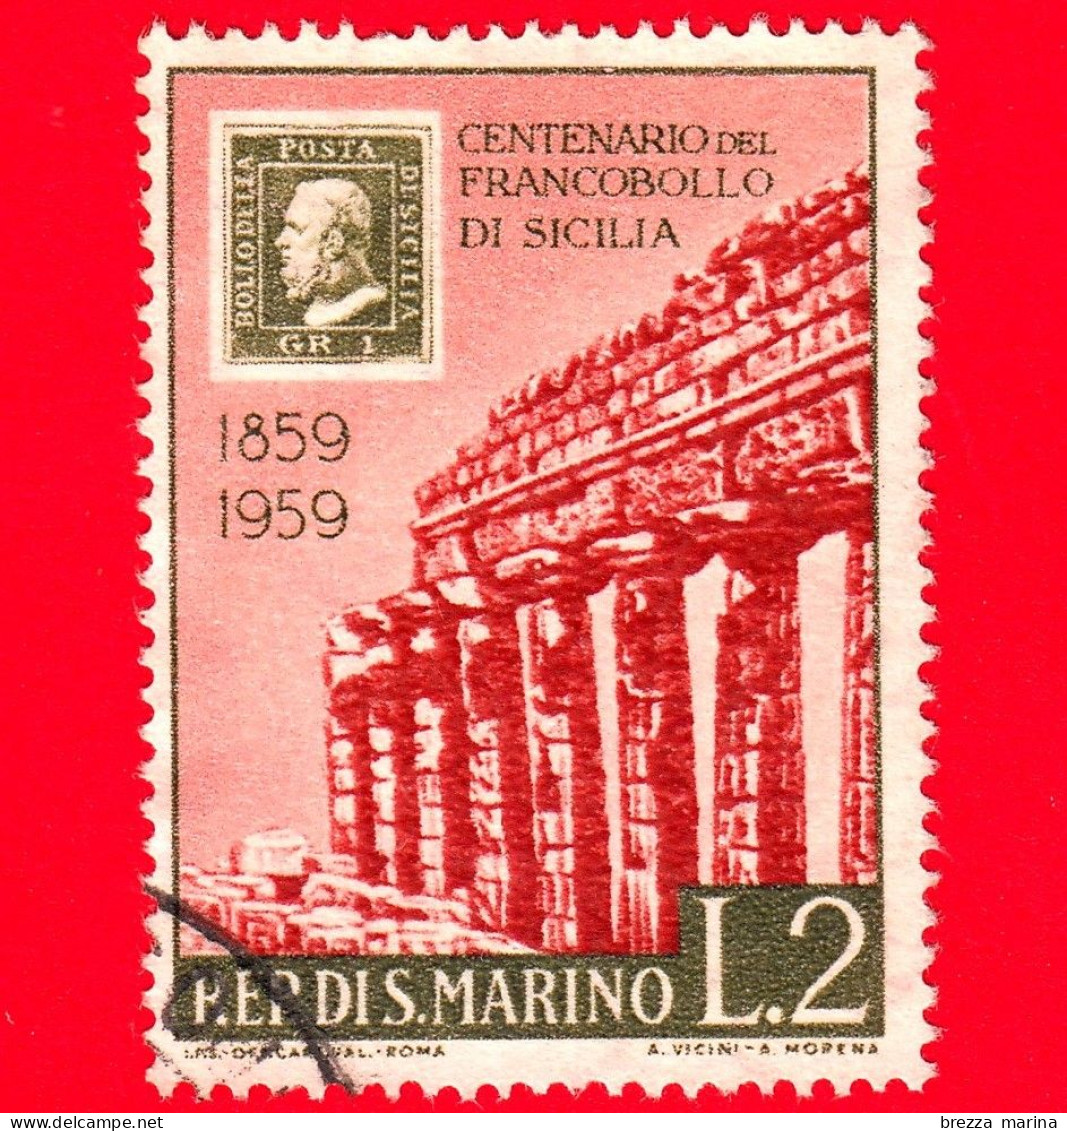 SAN MARINO - Usato - 1959 - Centenario Dei Francobolli Di Sicilia - Tempio Di Selinunte - 2 L. - Oblitérés